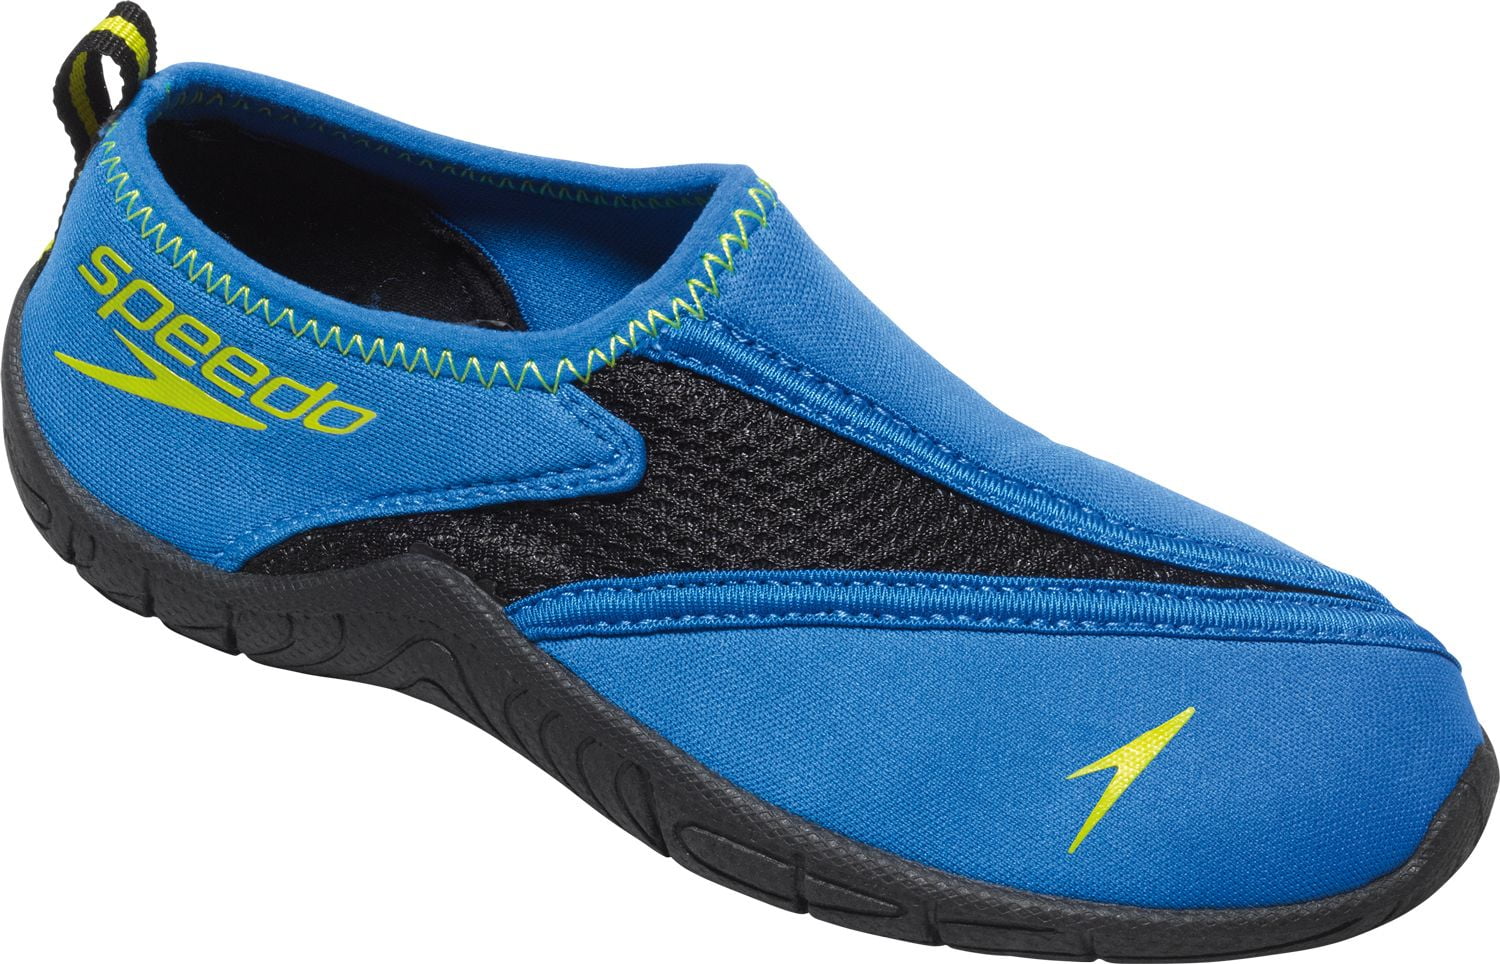 speedo kids water shoes